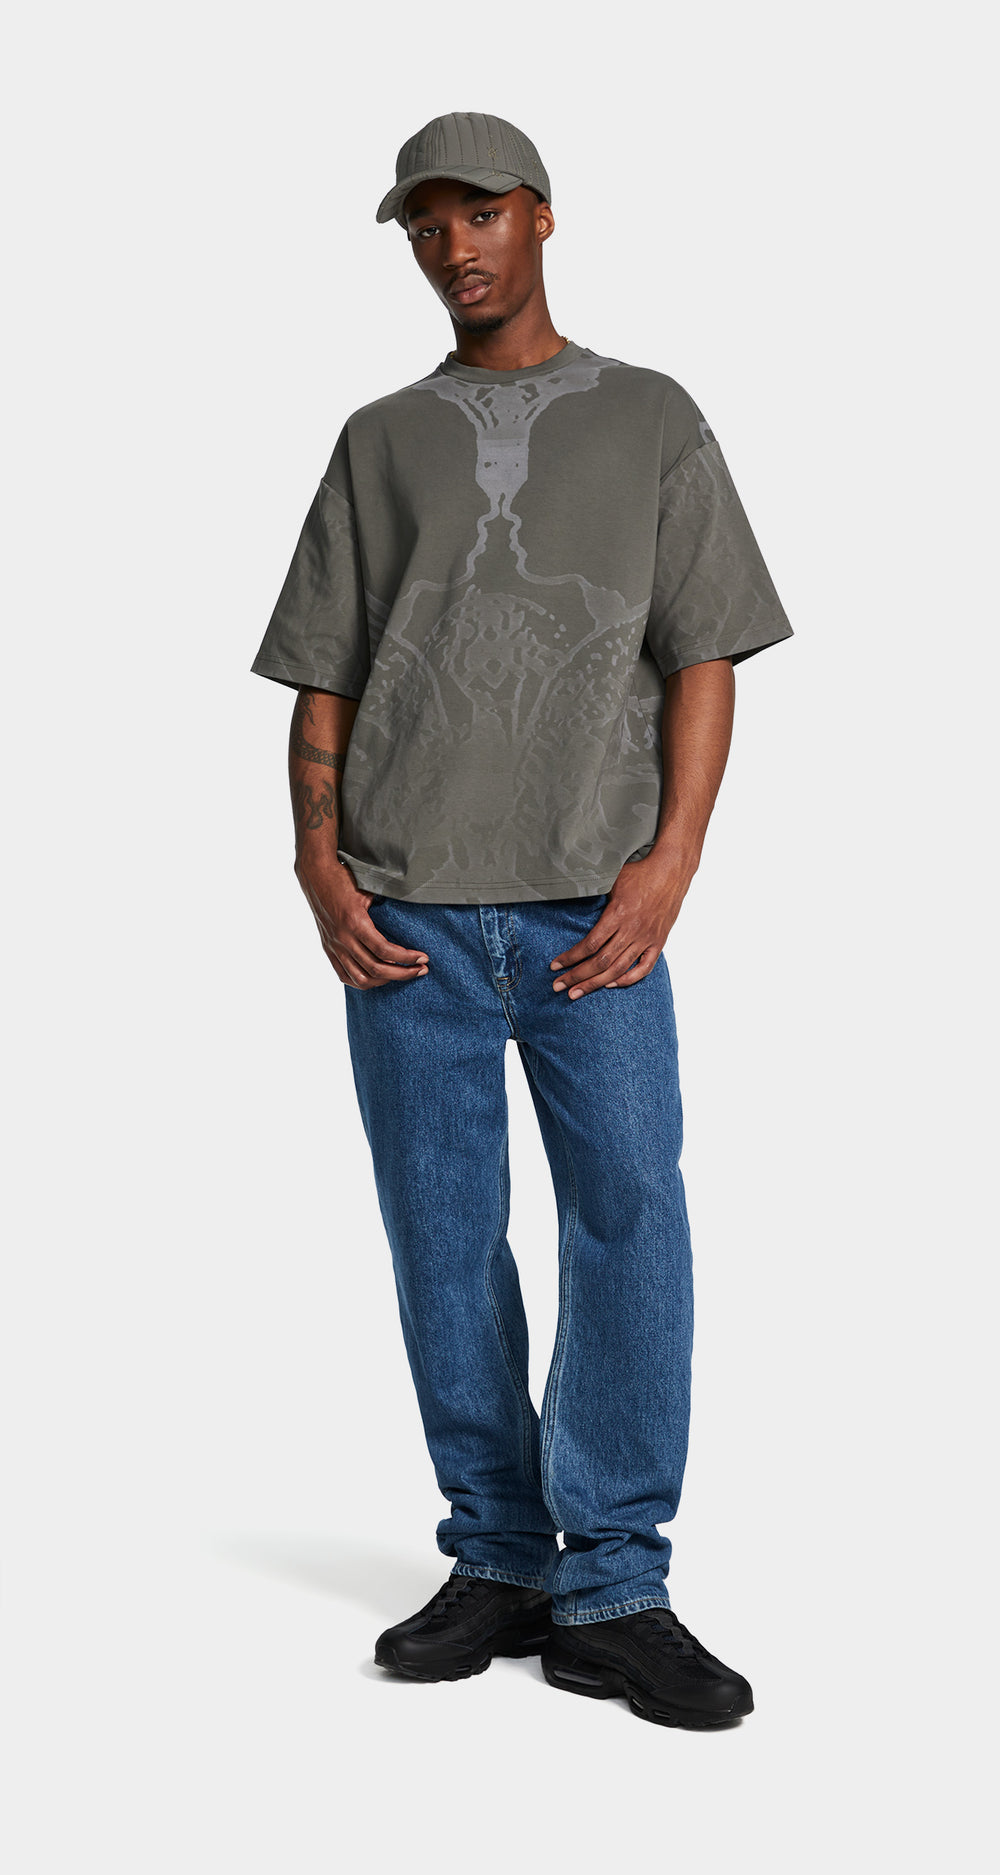 DP - Chimera Green Secret Ryhthm Oversized T-Shirt - Men - Front